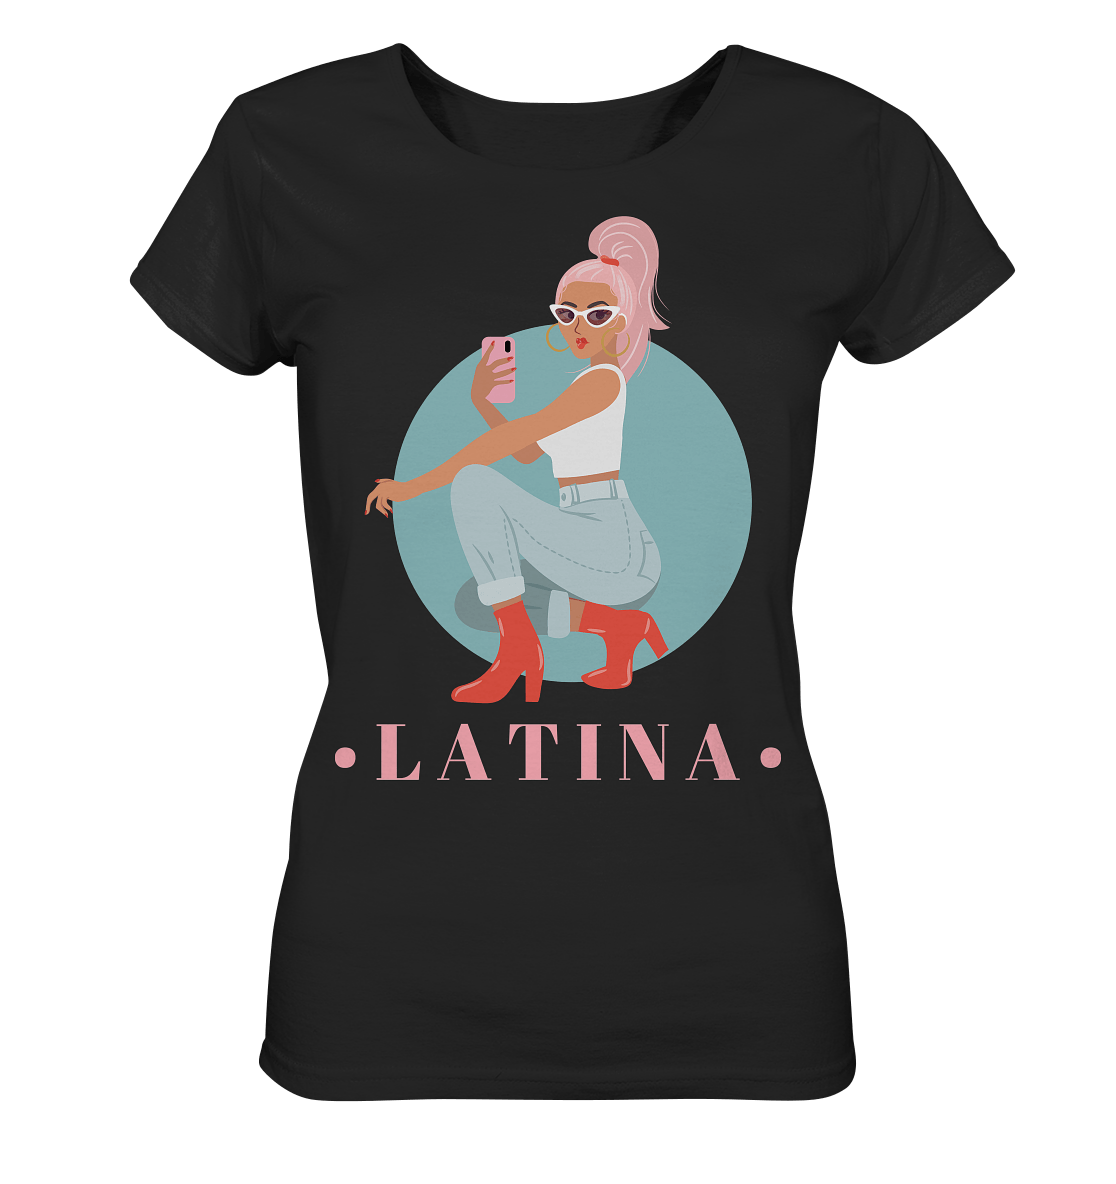 Latina Damen Shirt in schwarz mit latina girl